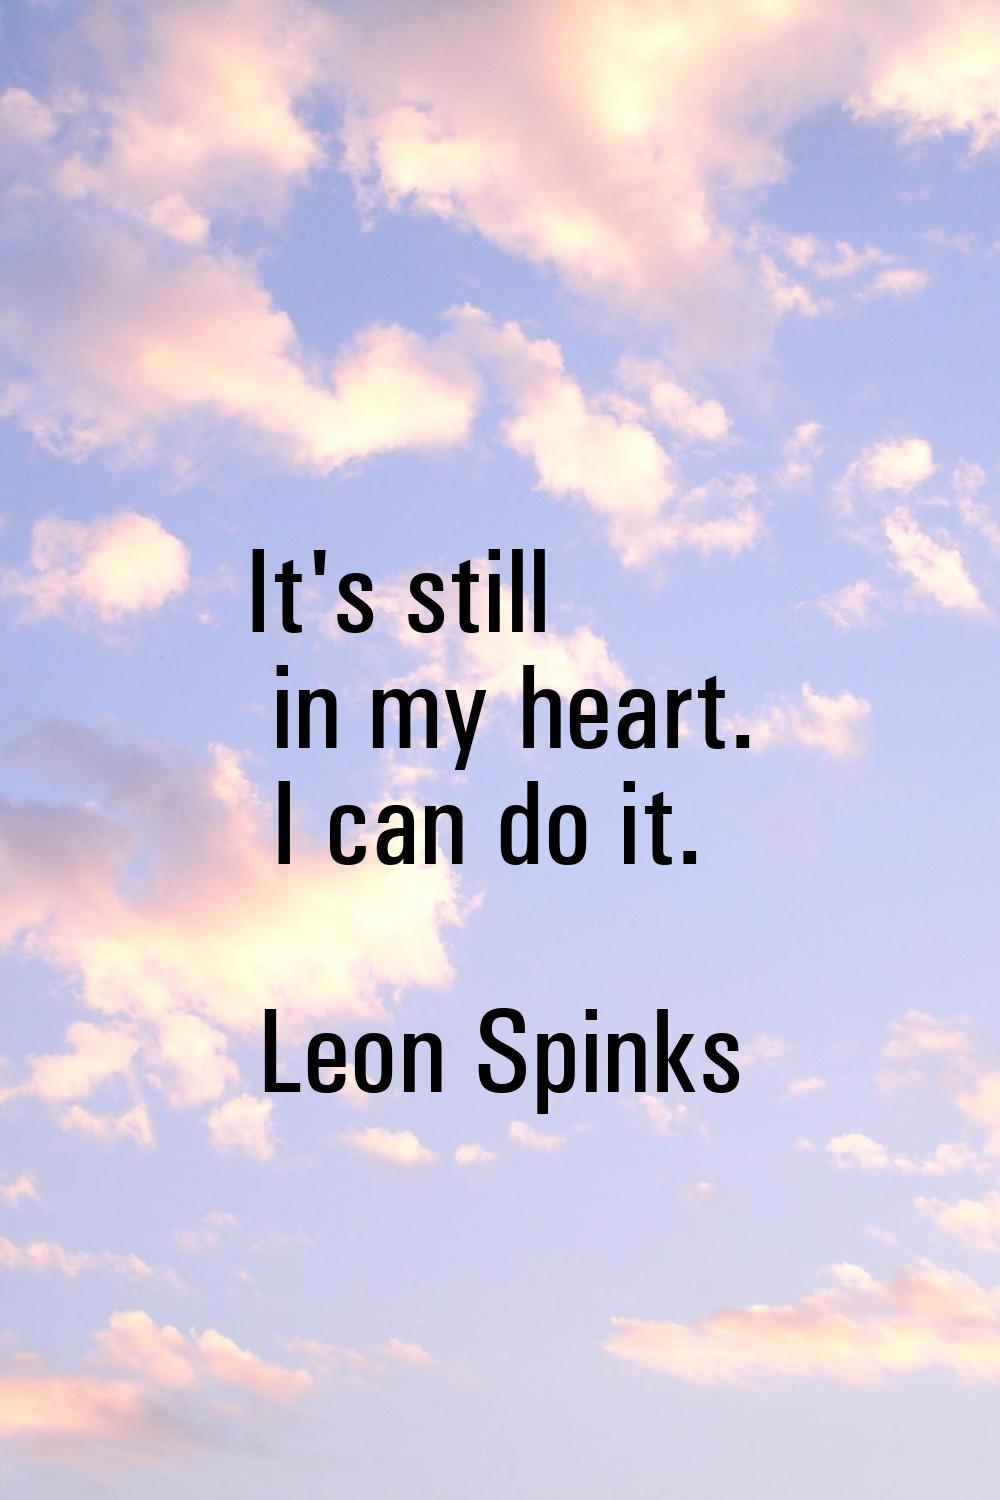 It's still in my heart. I can do it.